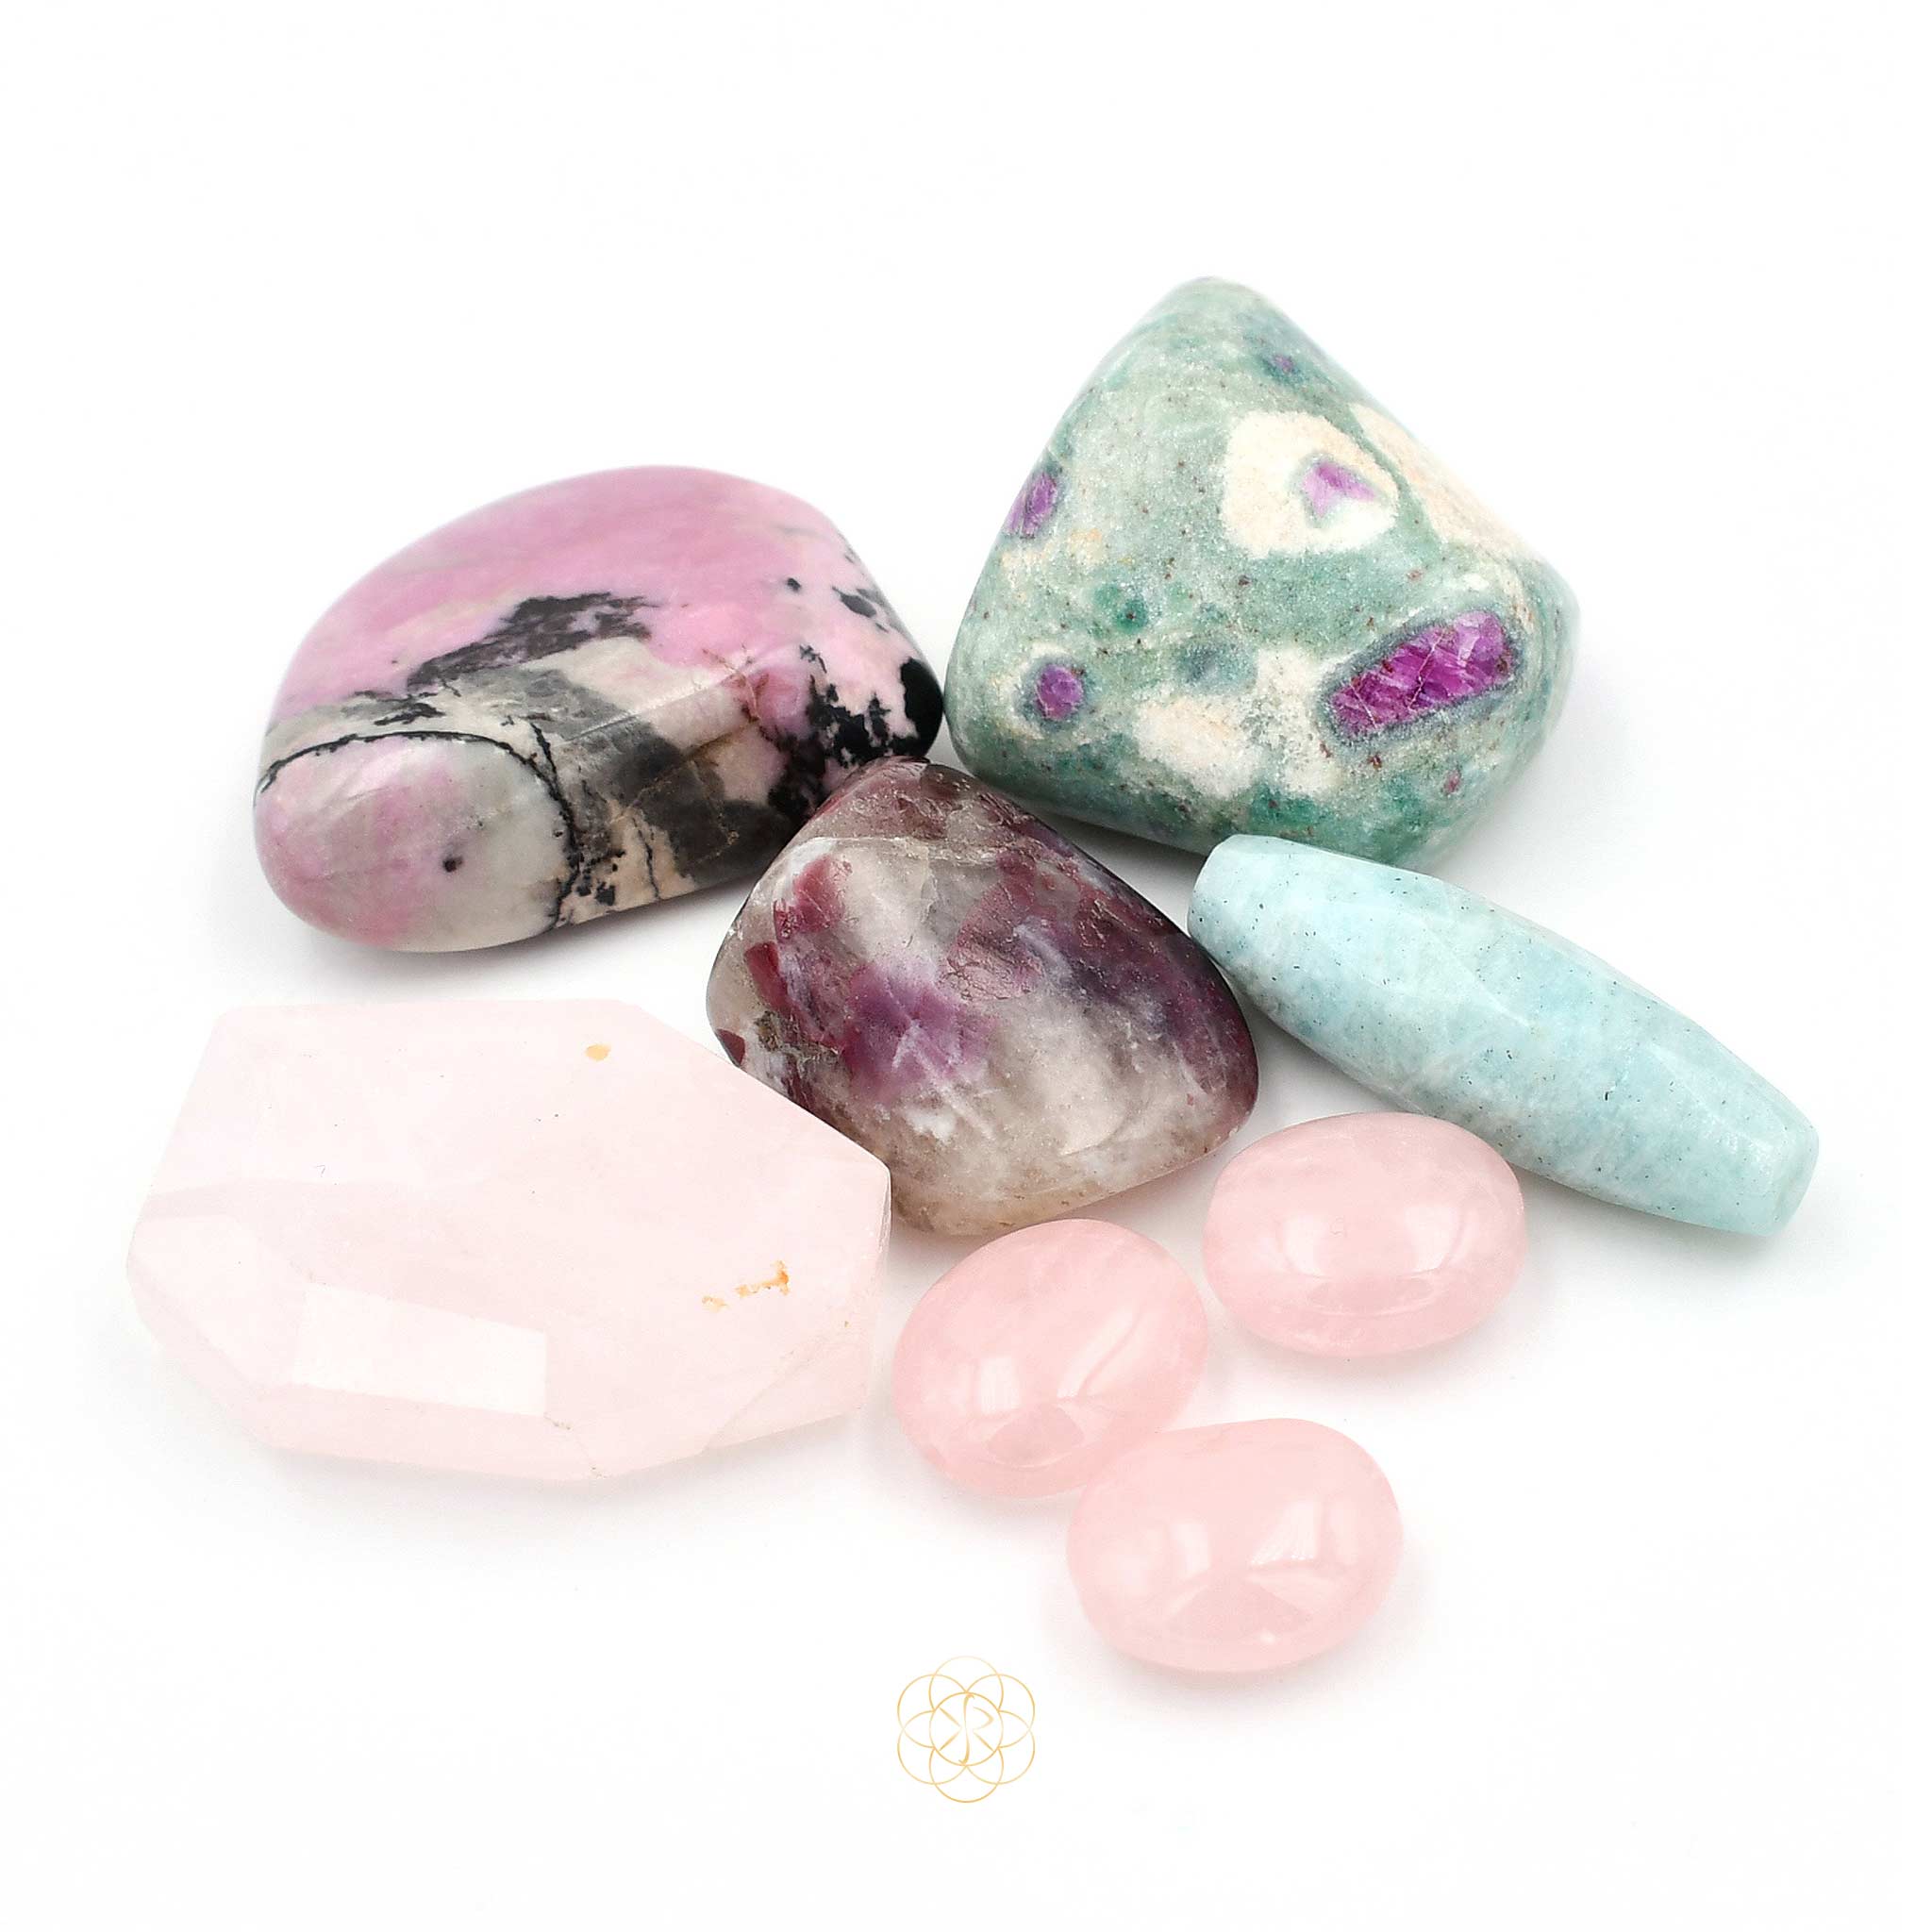 Shop Crystals for Love & Connection | Kim R Sanchez